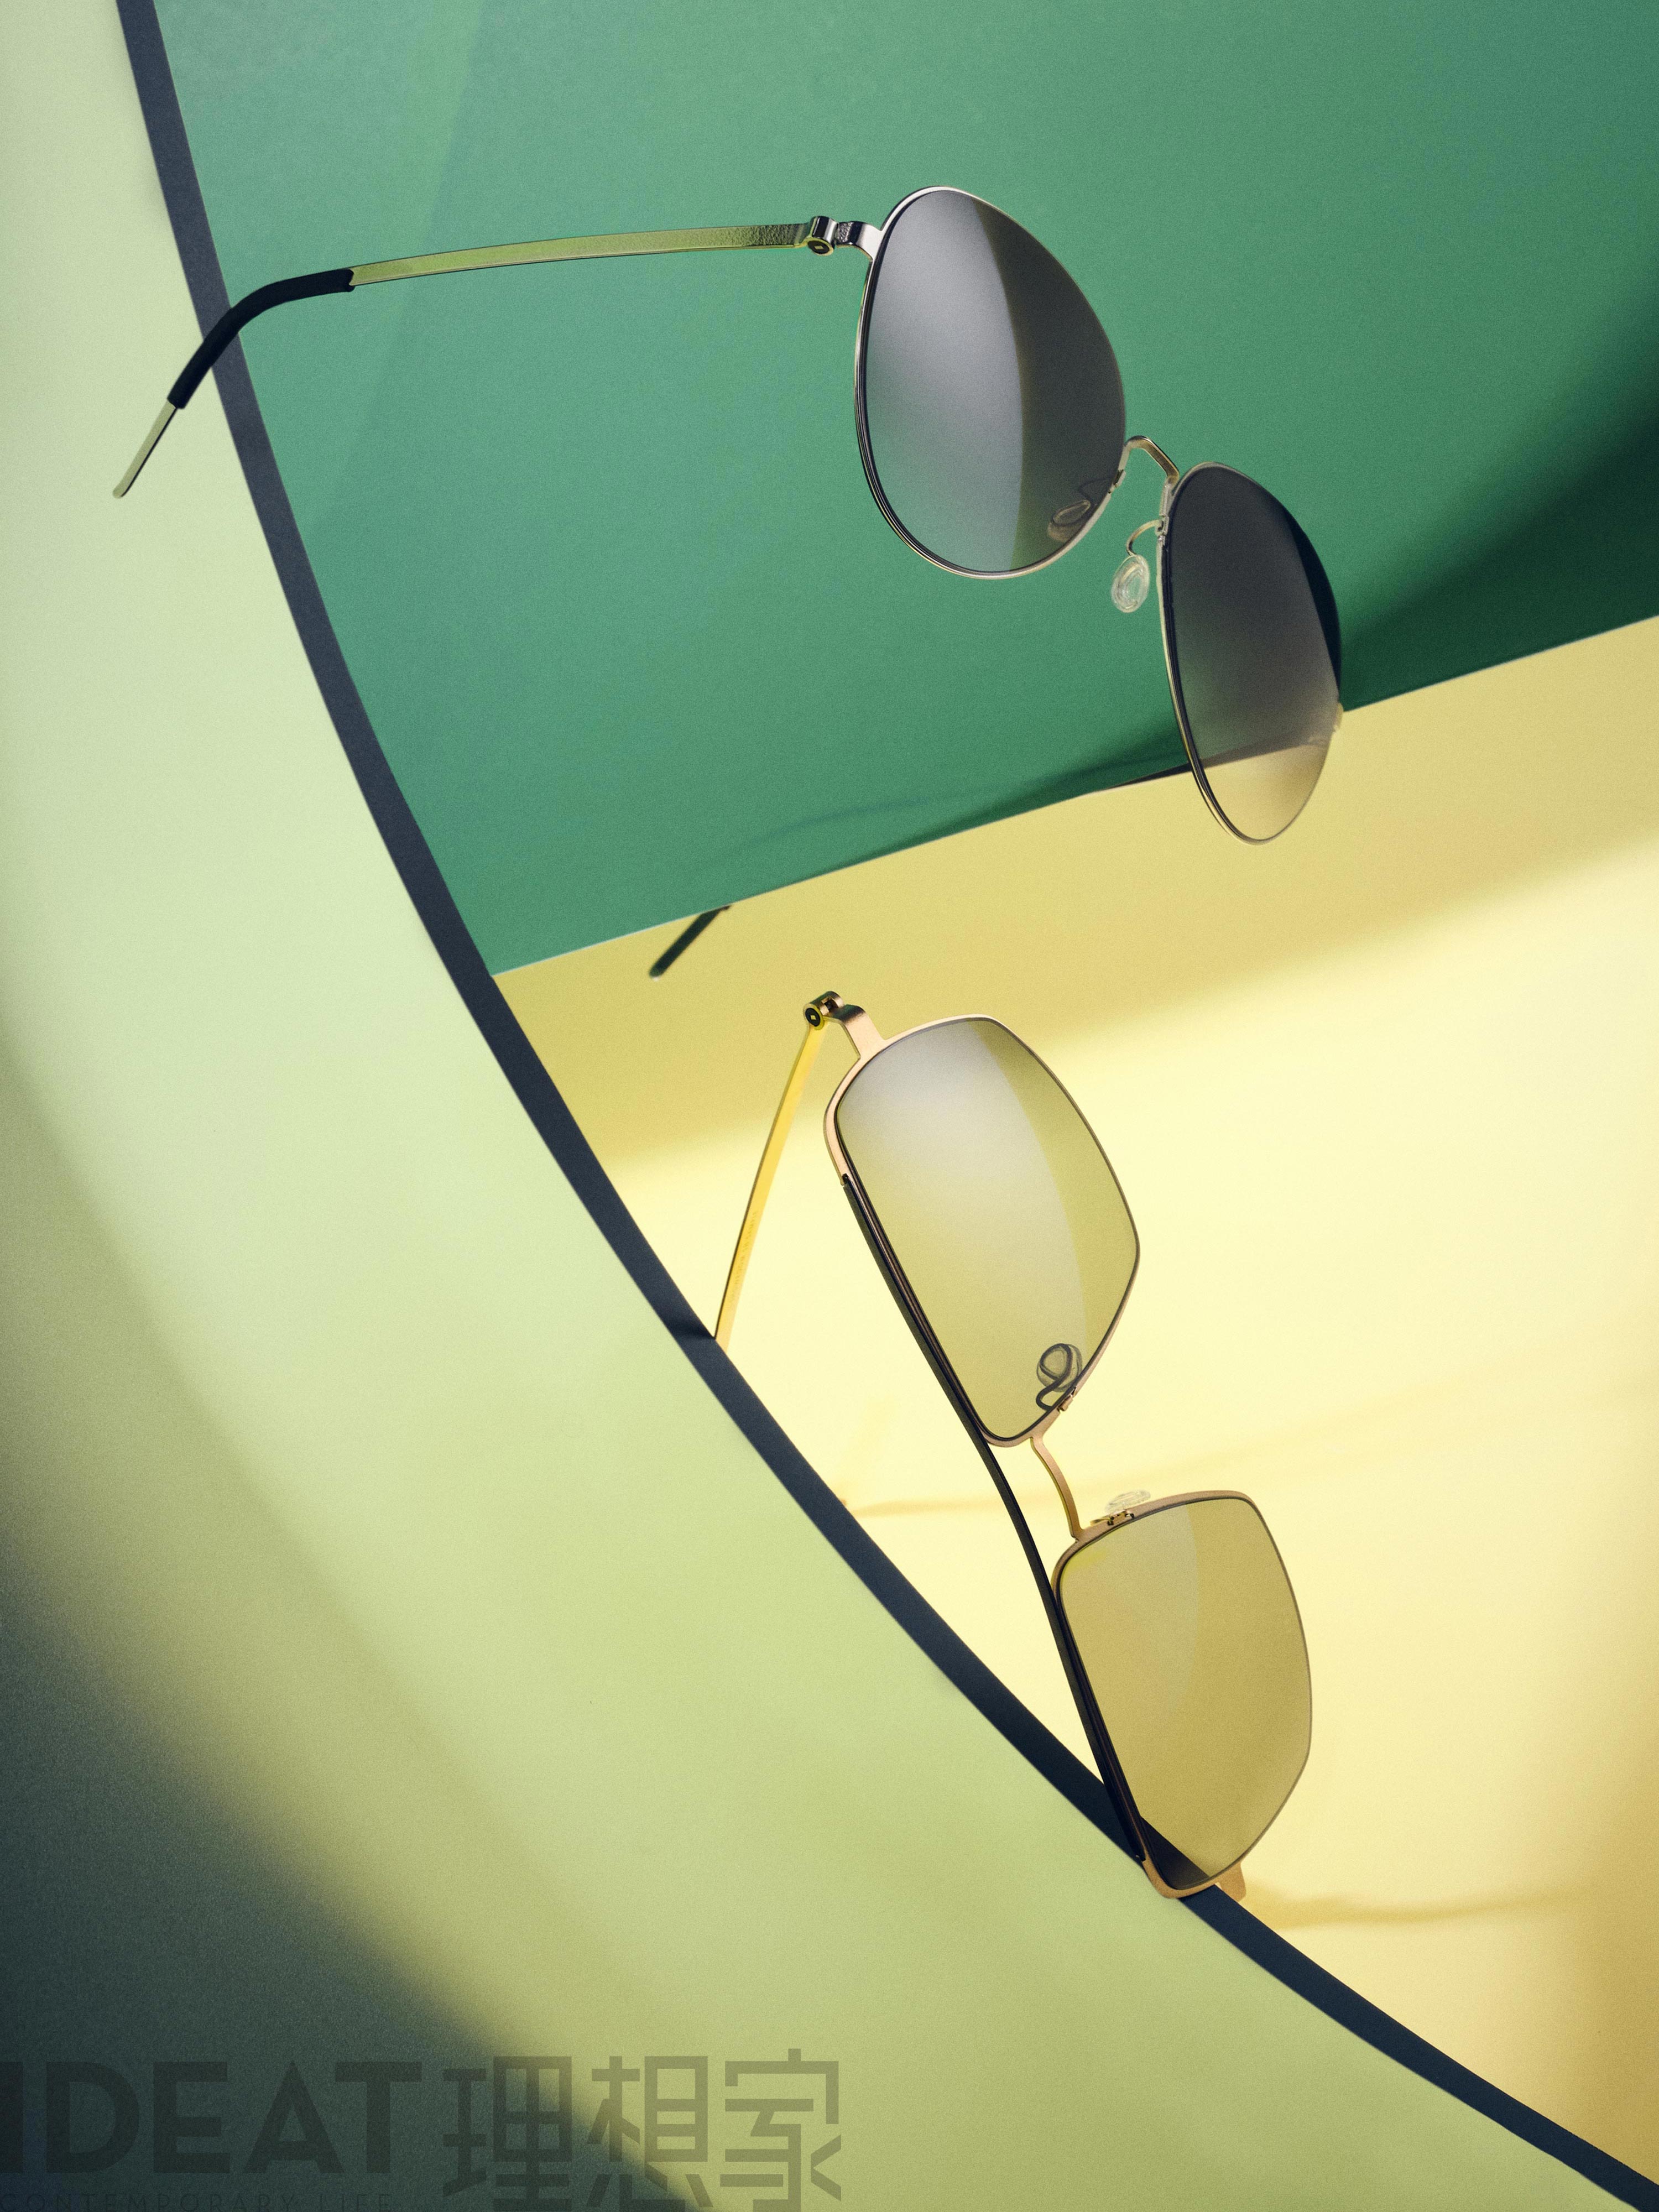 IDEAT magazine featuring LINDBERG titanium sunglasses in Model 8908 and 8909